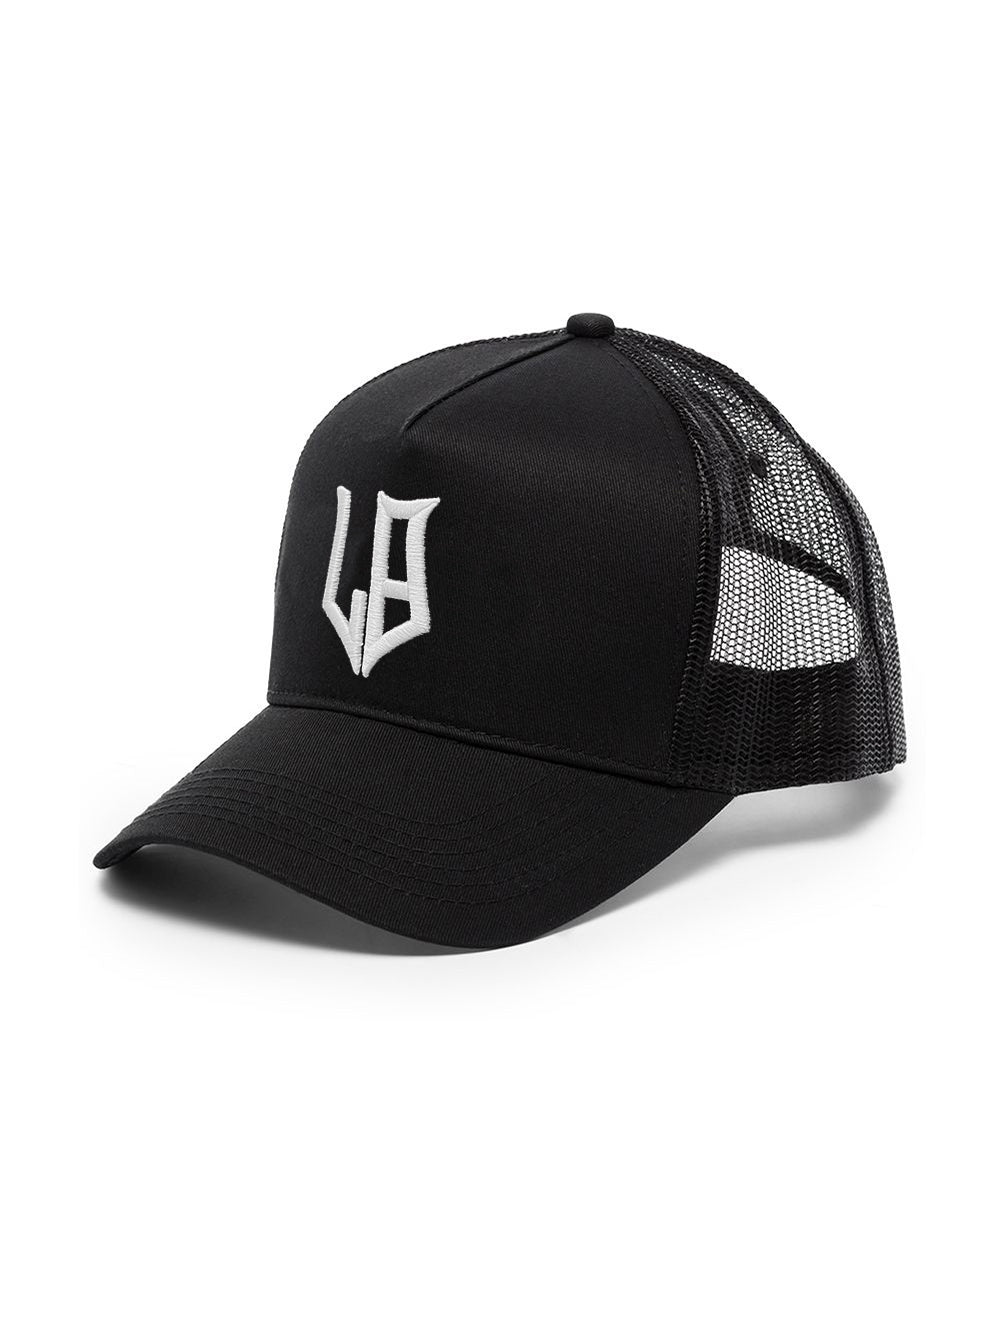 LB Crest Trucker Cap